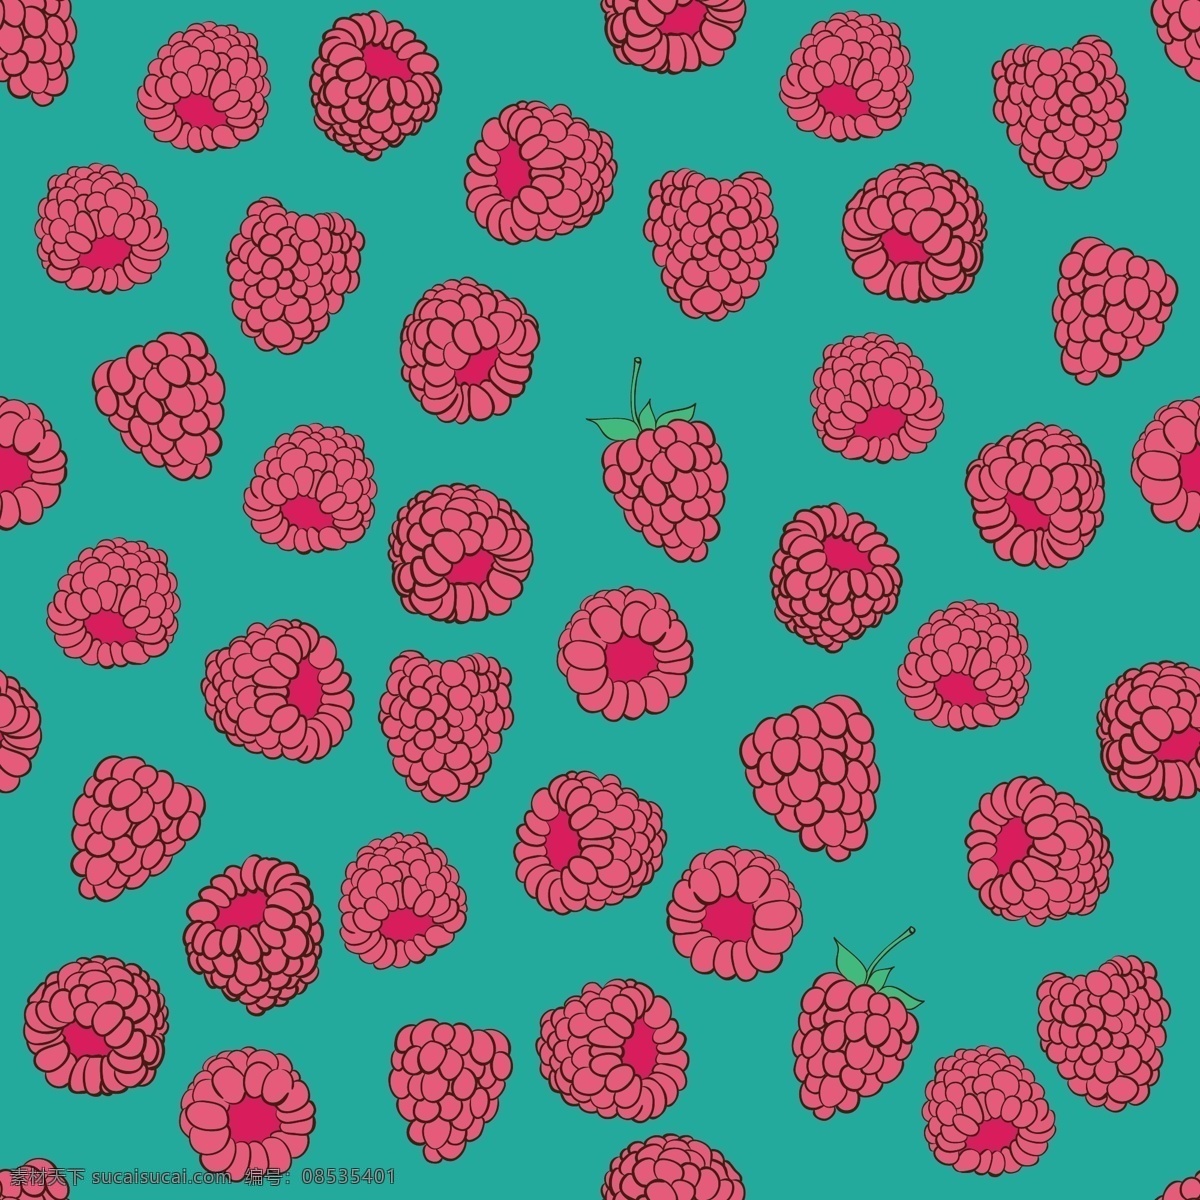 复盆子 树倭泡 树莓 麦泡 悬钩子 覆盆莓 乌藨子 大蛇鳯 攀美头 地仙泡 小托盘 山泡 草莓 水果 水果设计 手绘 新鲜草莓 新鲜水果 矢量 生物世界